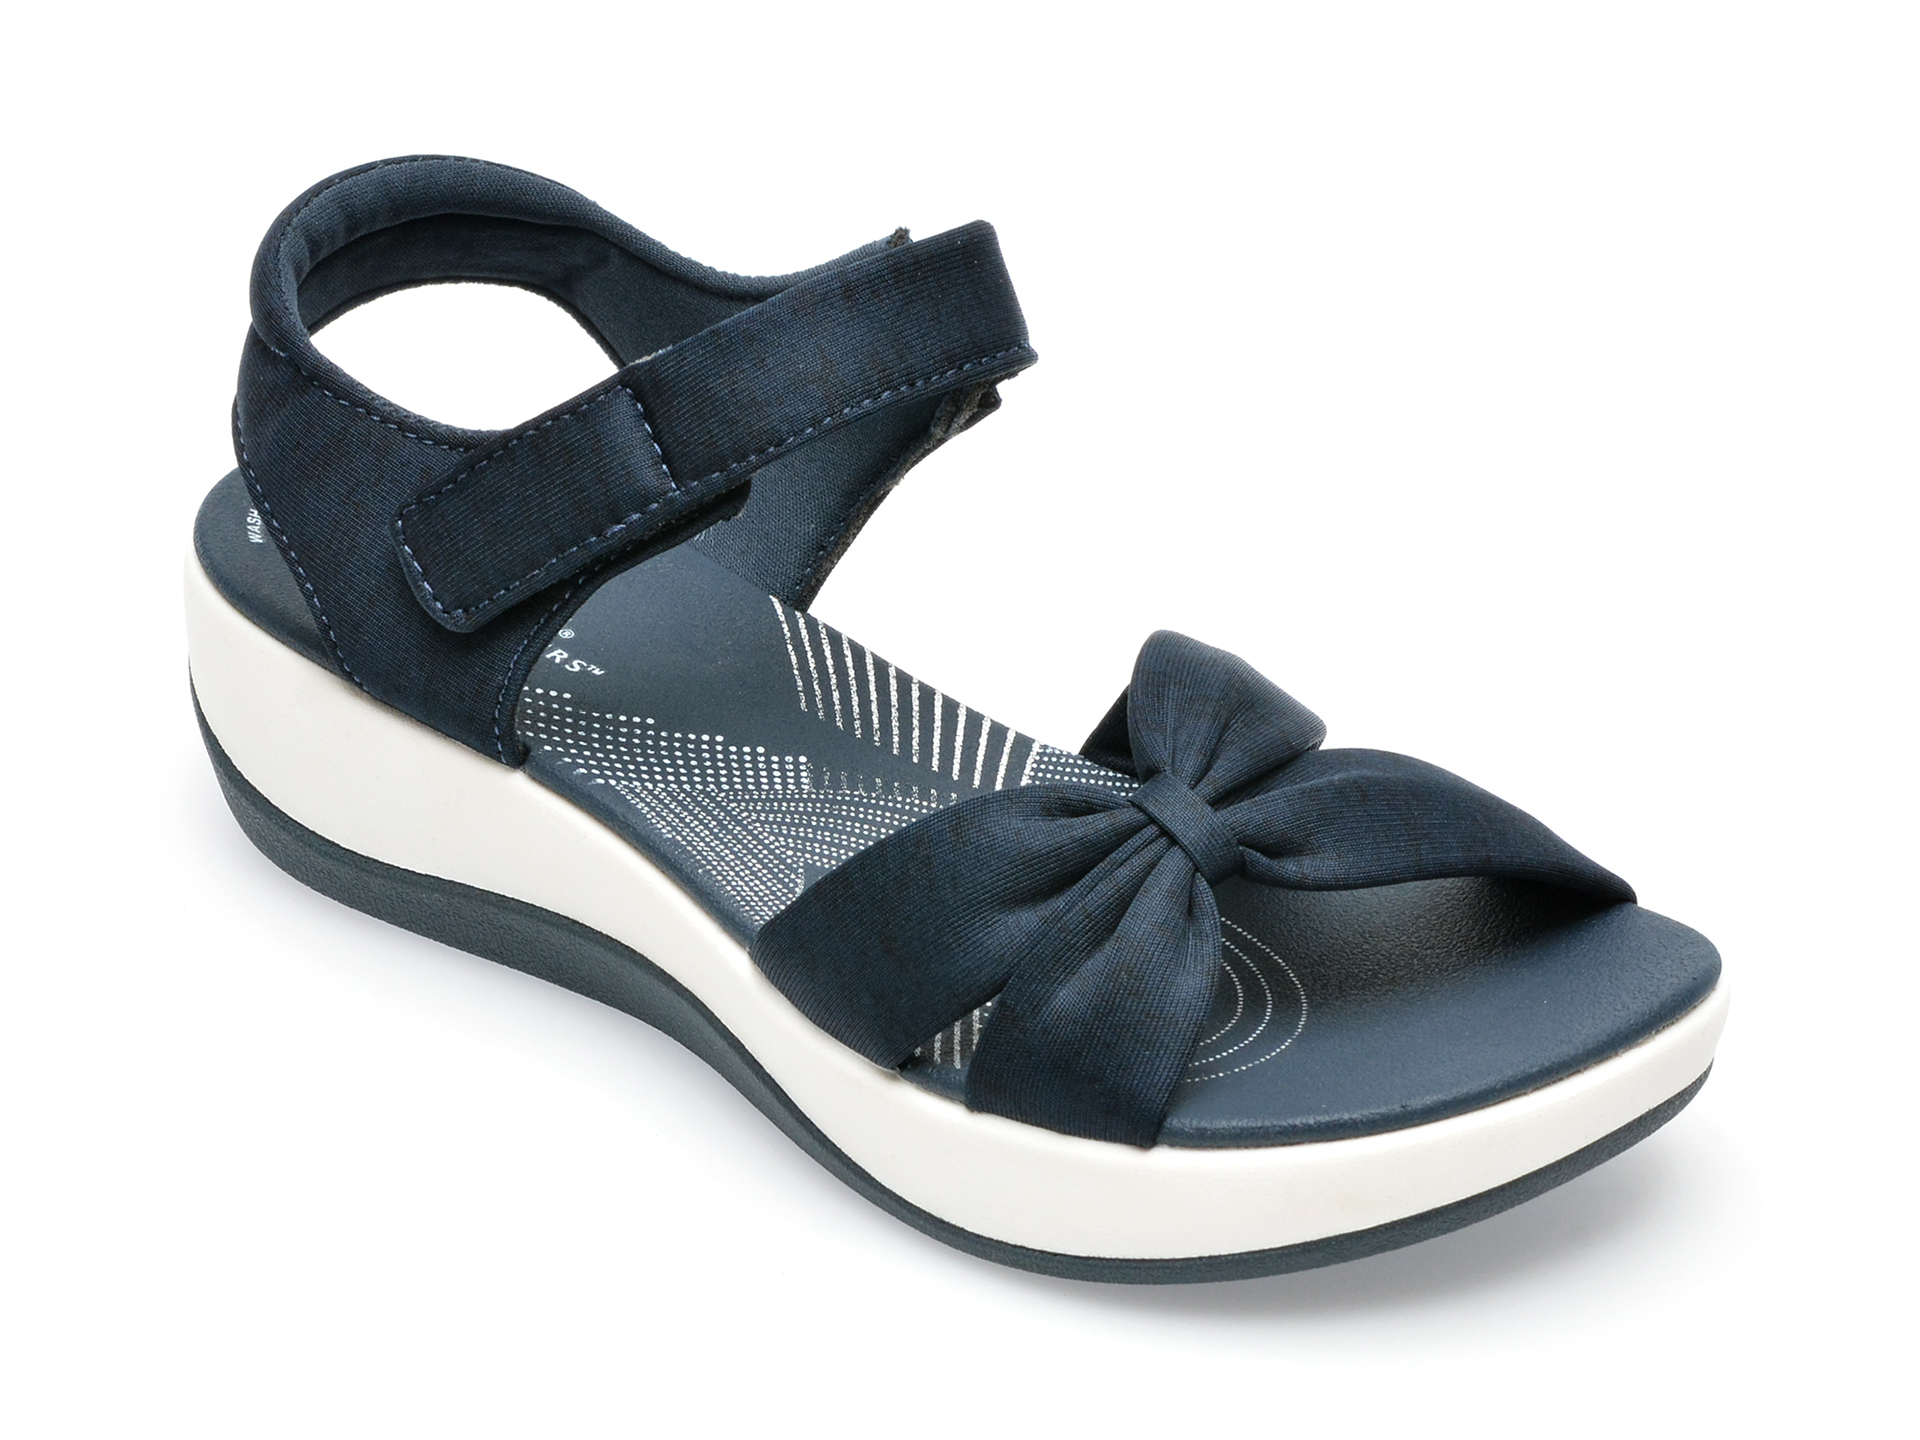 Poze Sandale CLARKS bleumarin, ARLA SHORE 0912, din material textil otter.ro